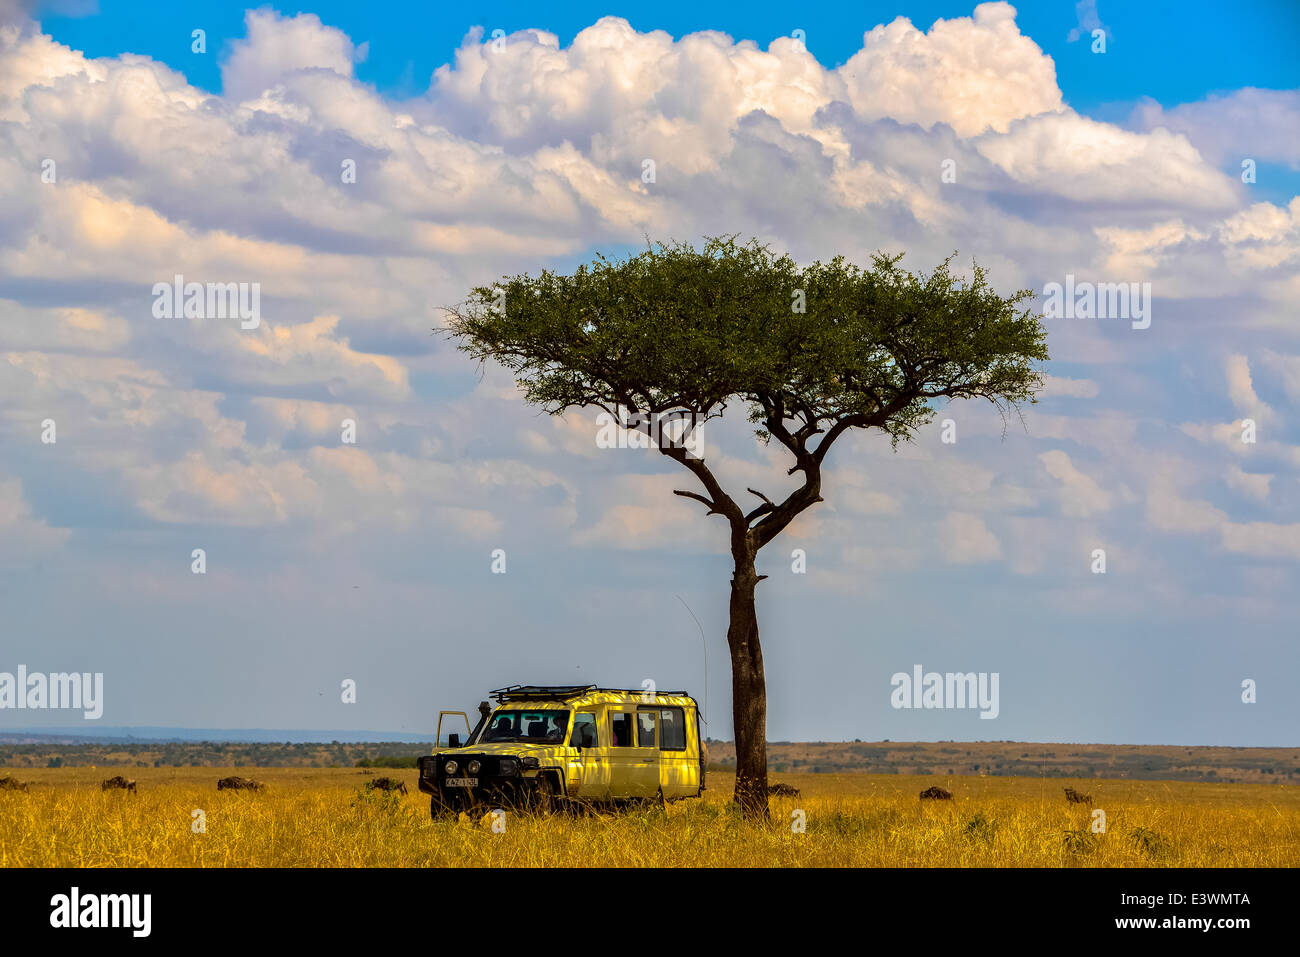 Une jeep sous un arbre, à l'acacia un masai Mara national parc sauvage, kenia Banque D'Images